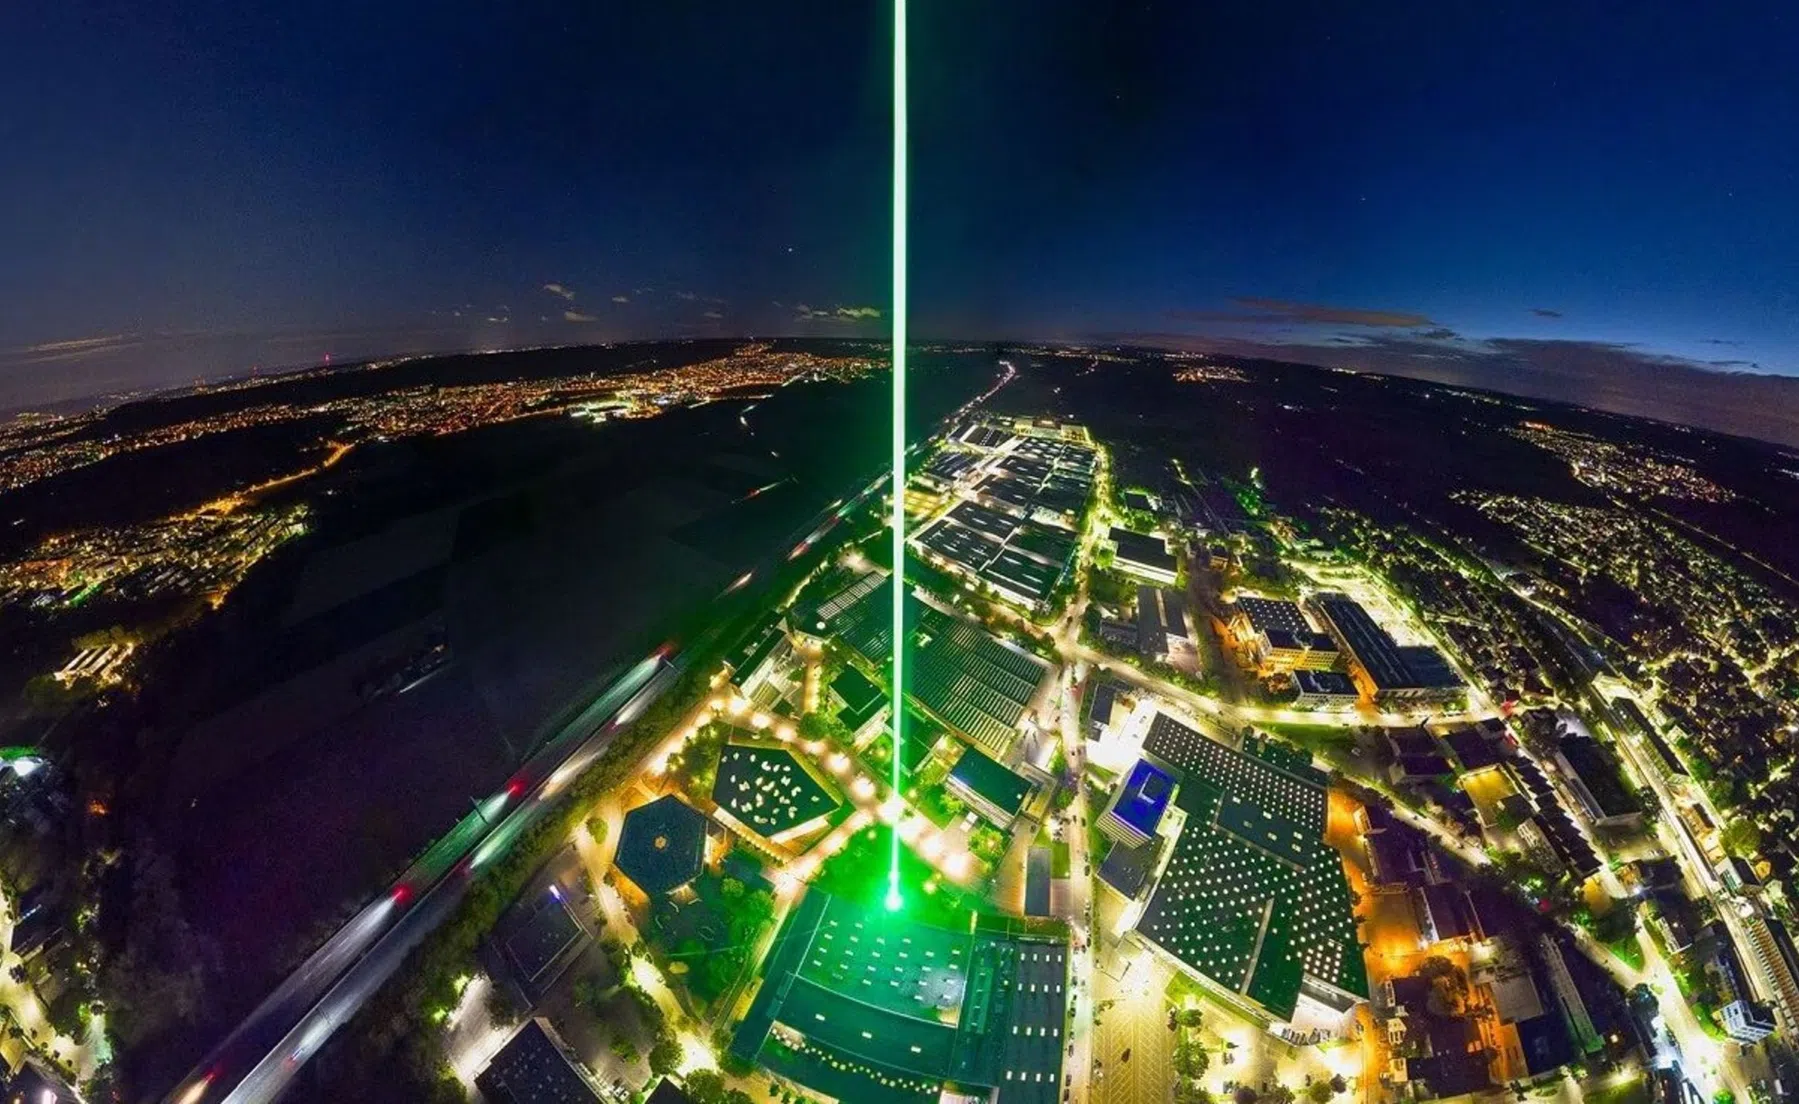 Krachtigste laser ter wereld volgende week te zien in Eindhoven